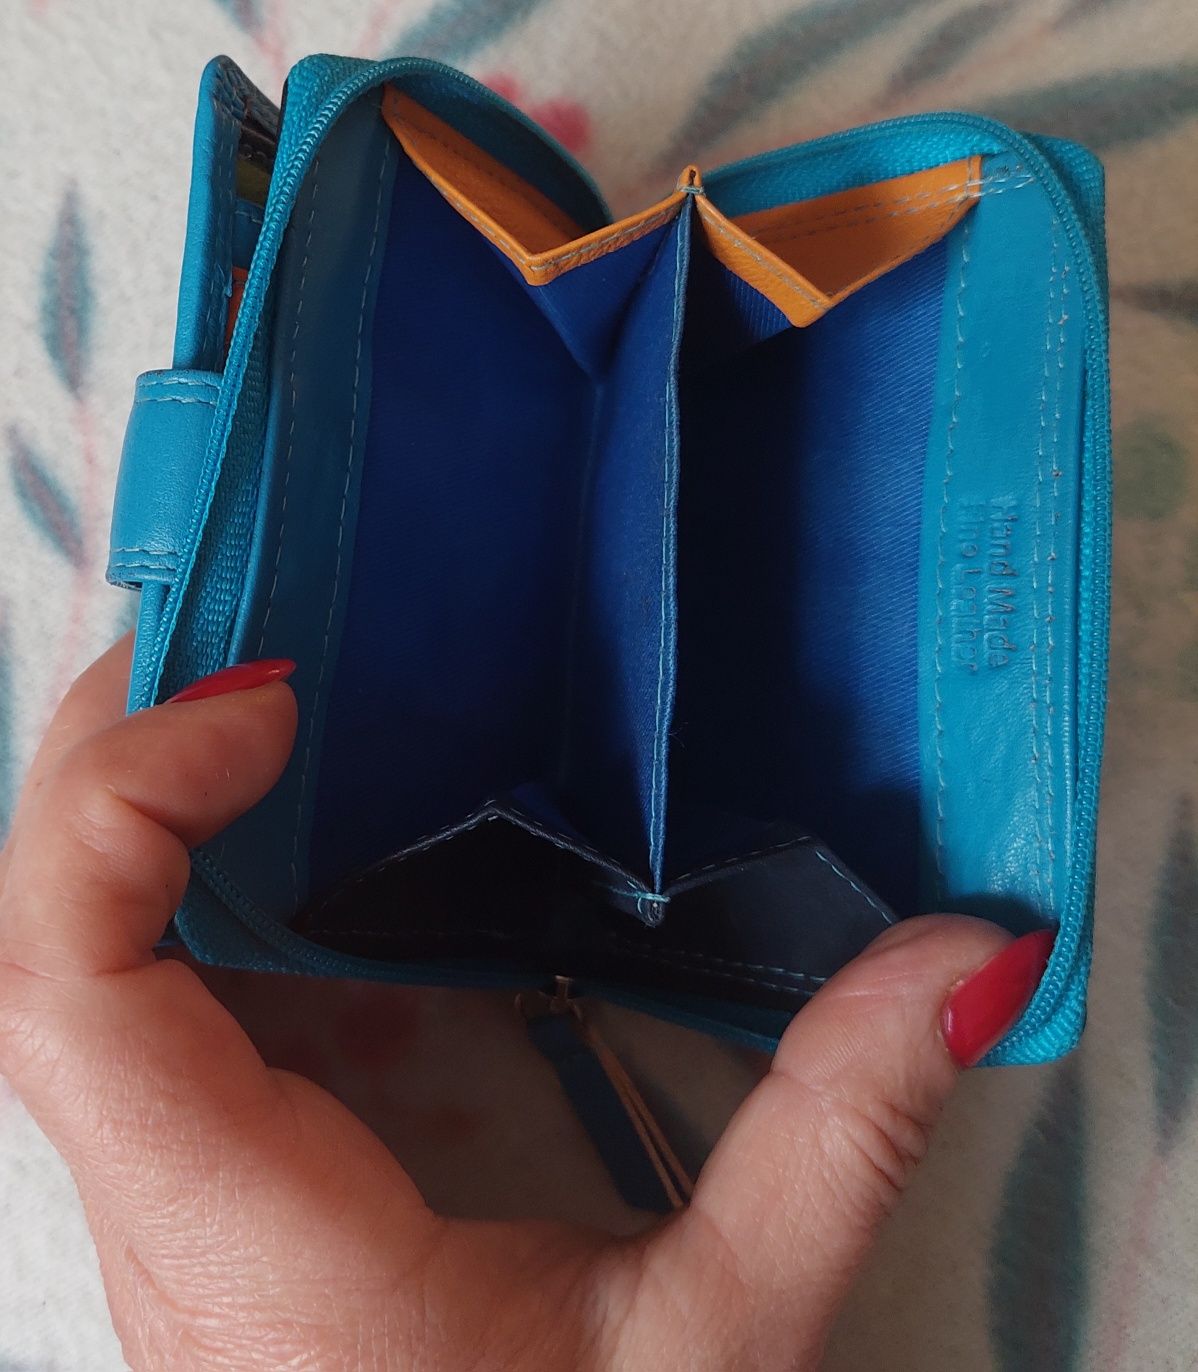 Niebieski skórzany portfelik portmonetka